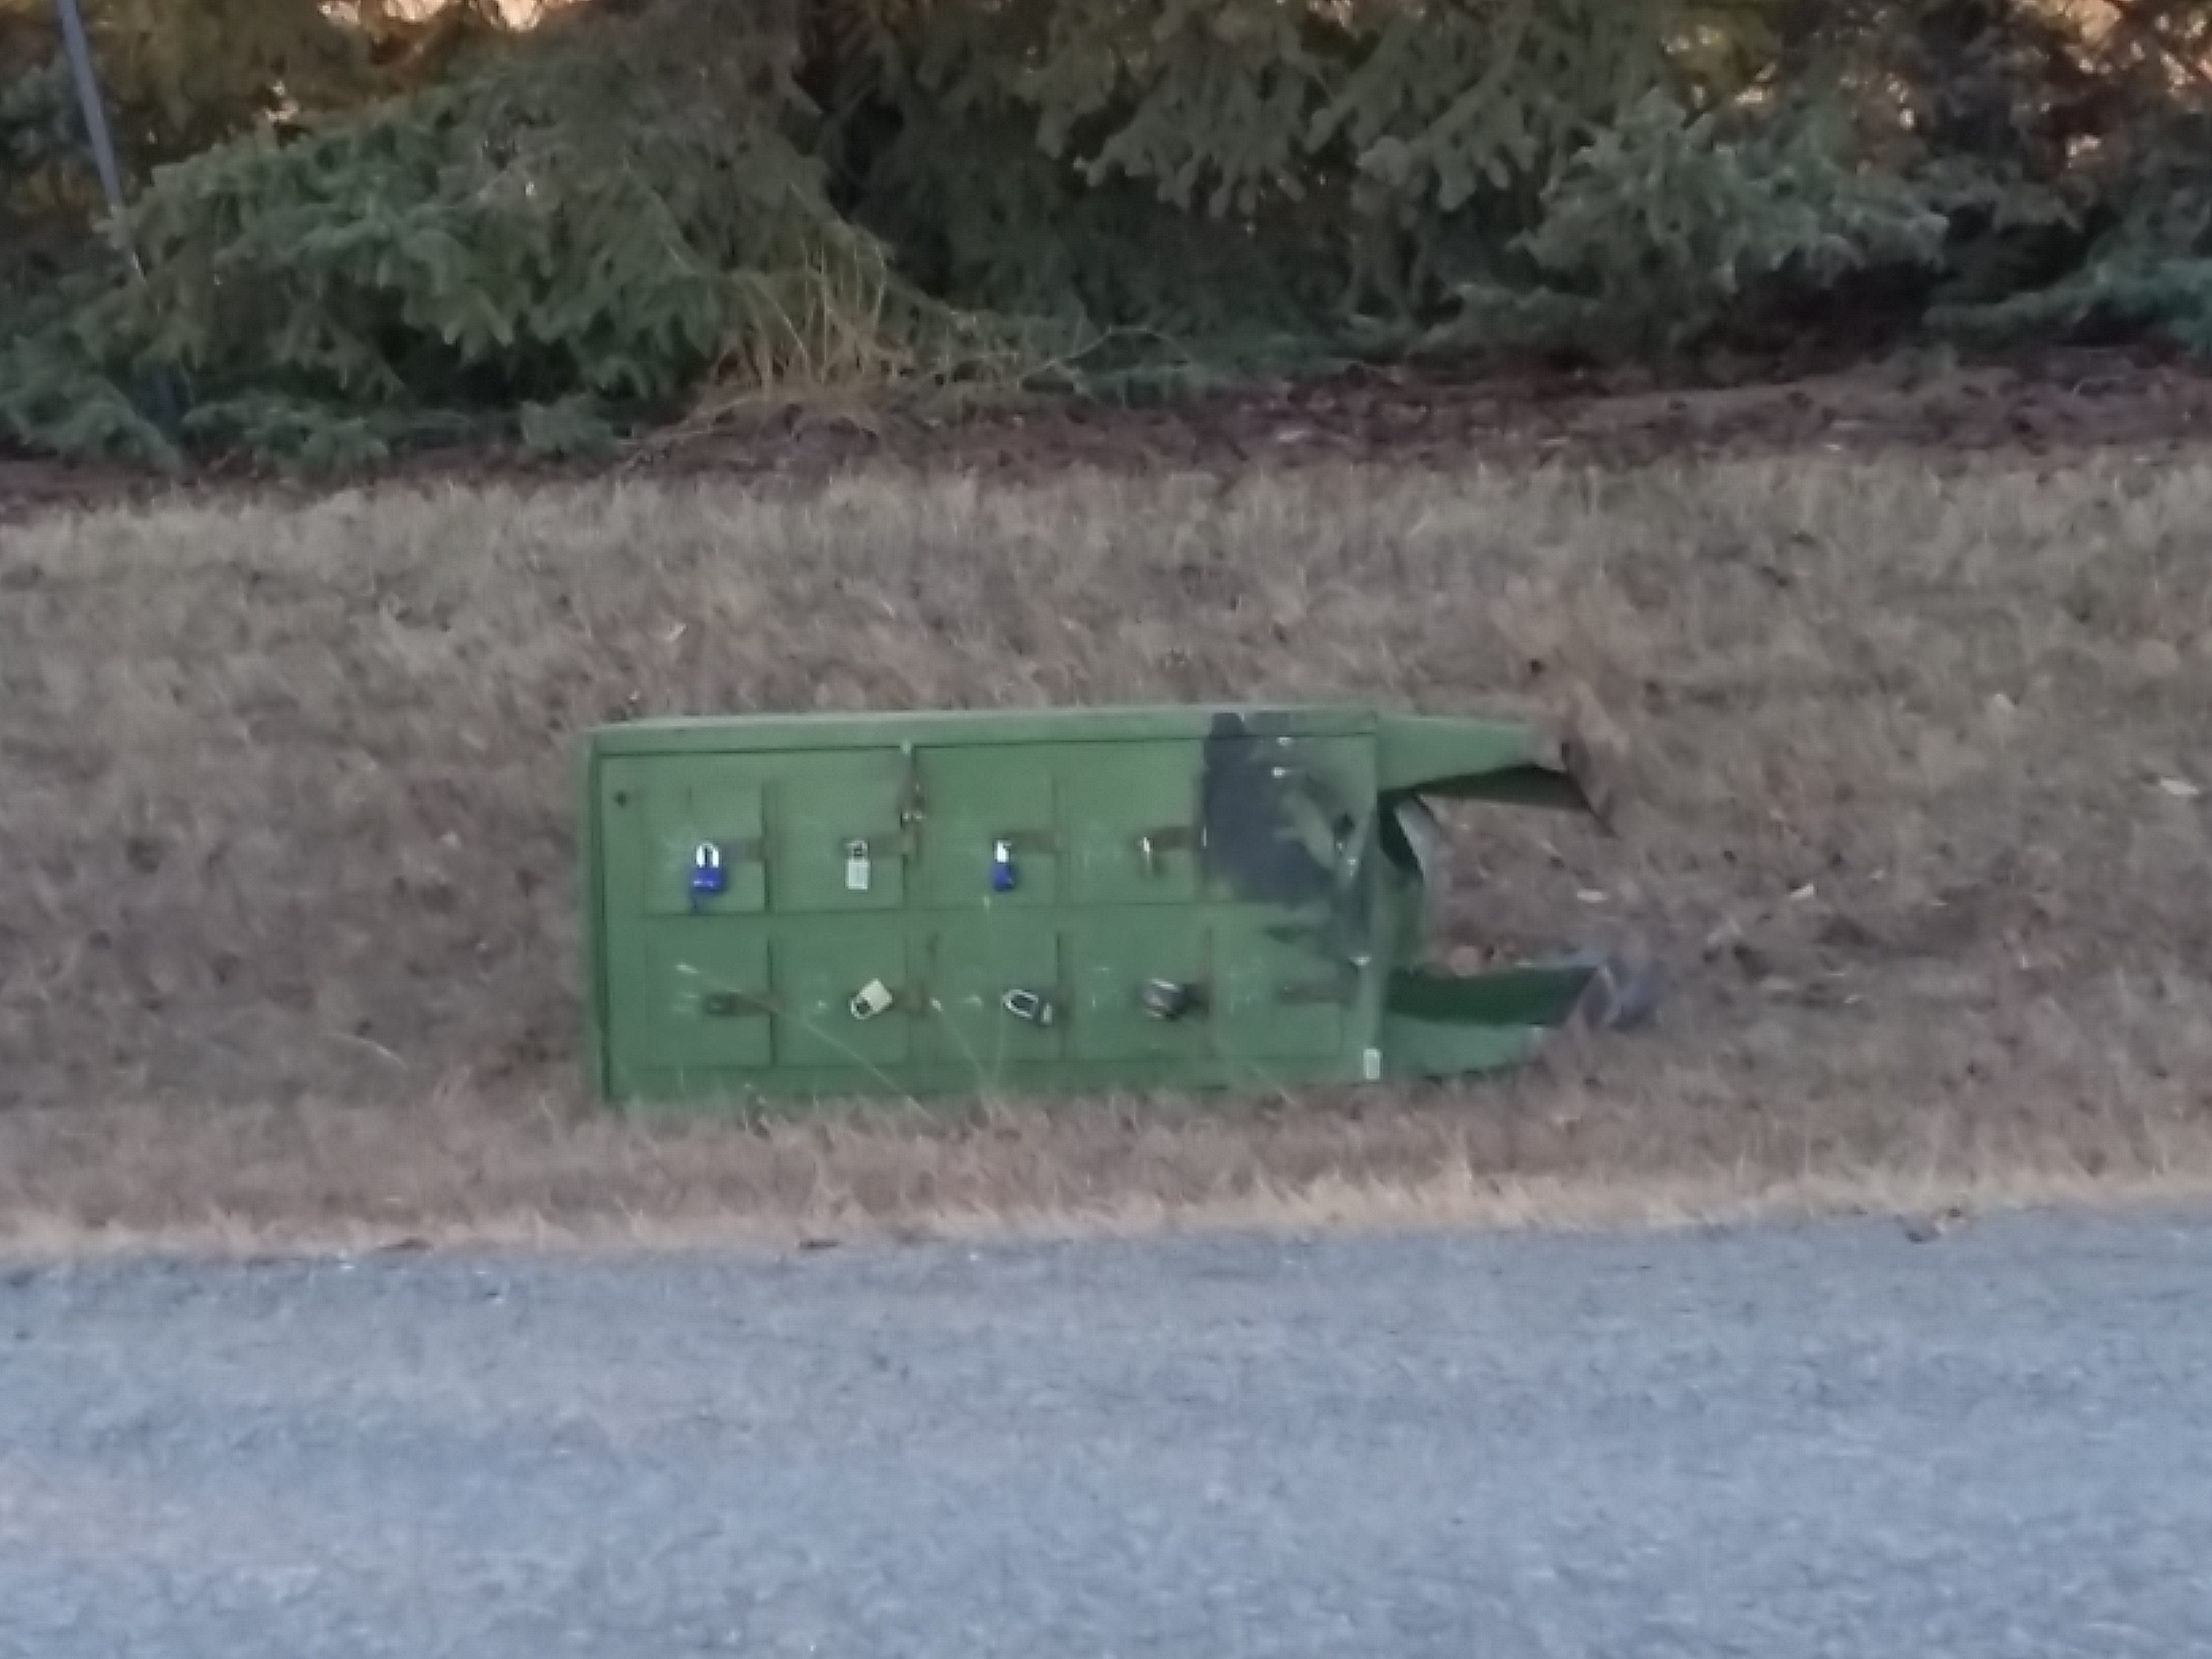 More Rural Mailbox Damage